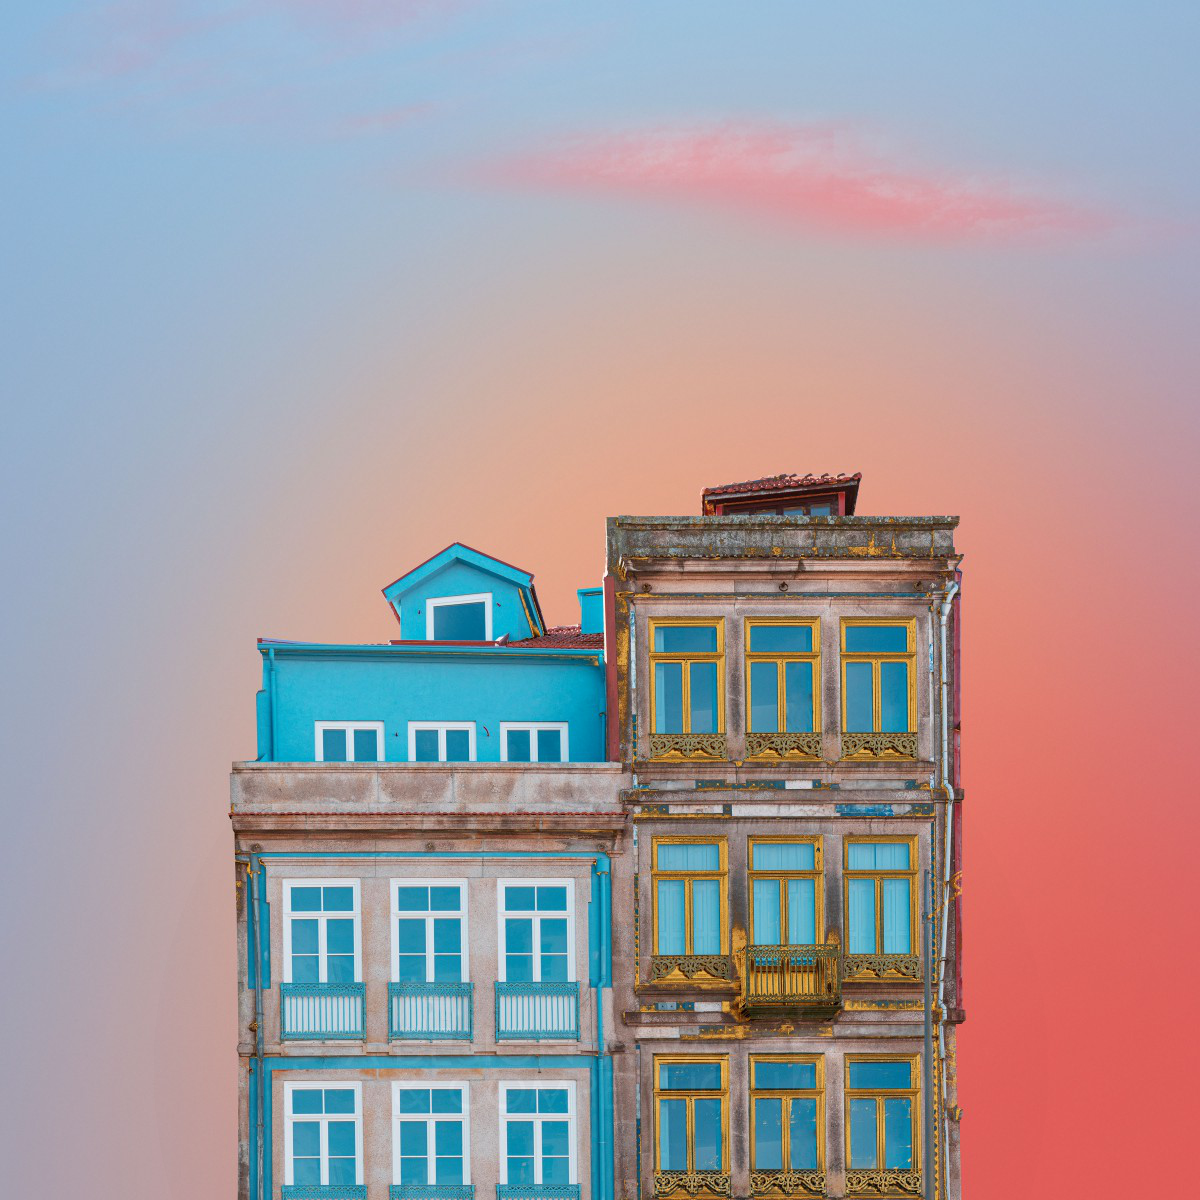 Architecture Photographique : Une vision surréaliste des bâtiments traditionnels de Porto